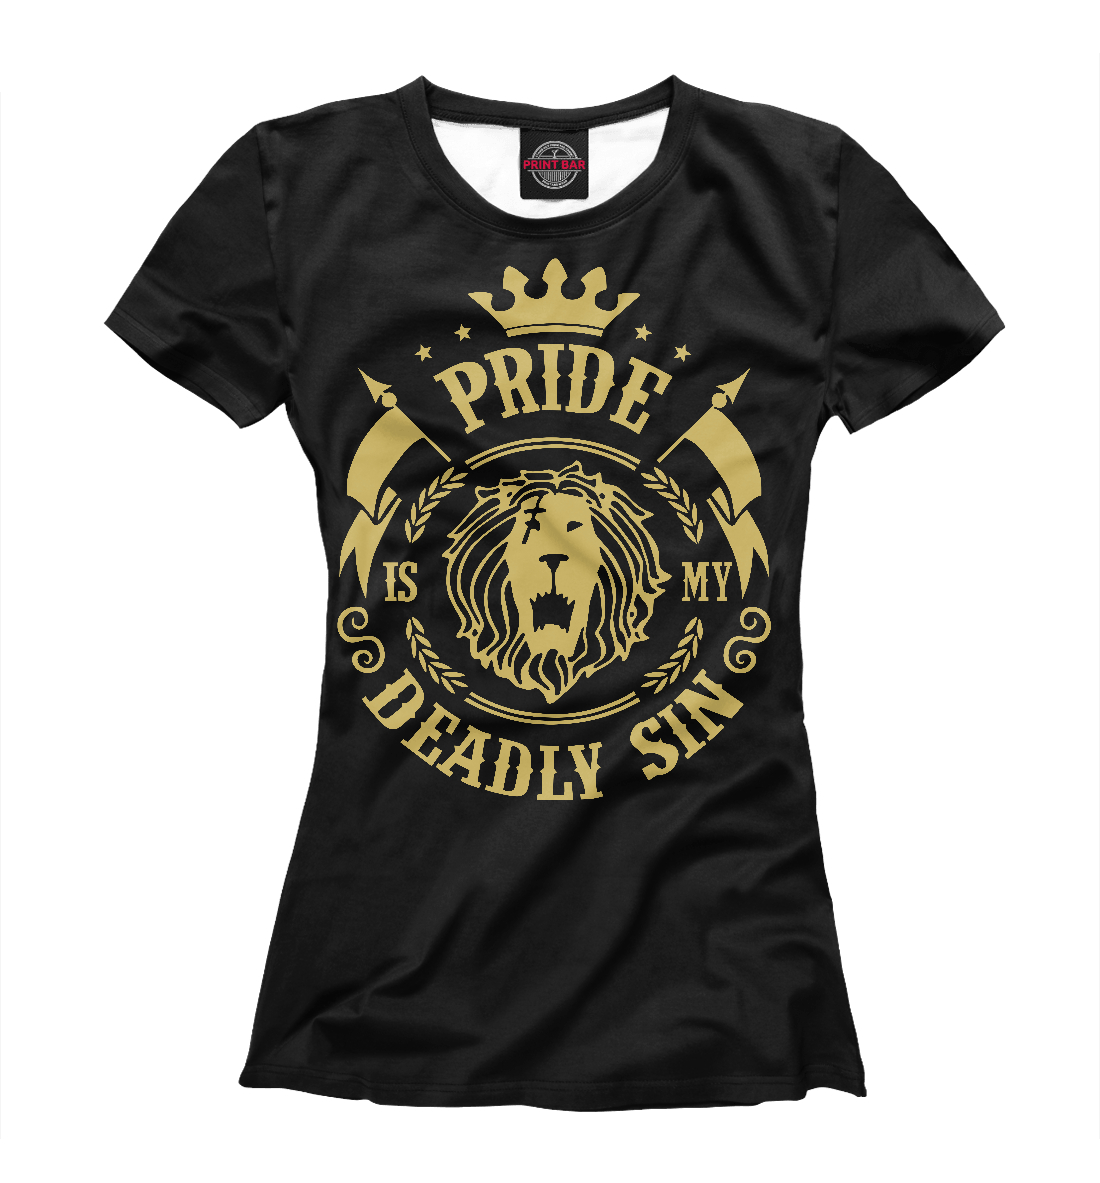 Футболка Pride is my sin для девочек, артикул: ANR-478445-fut-1mp